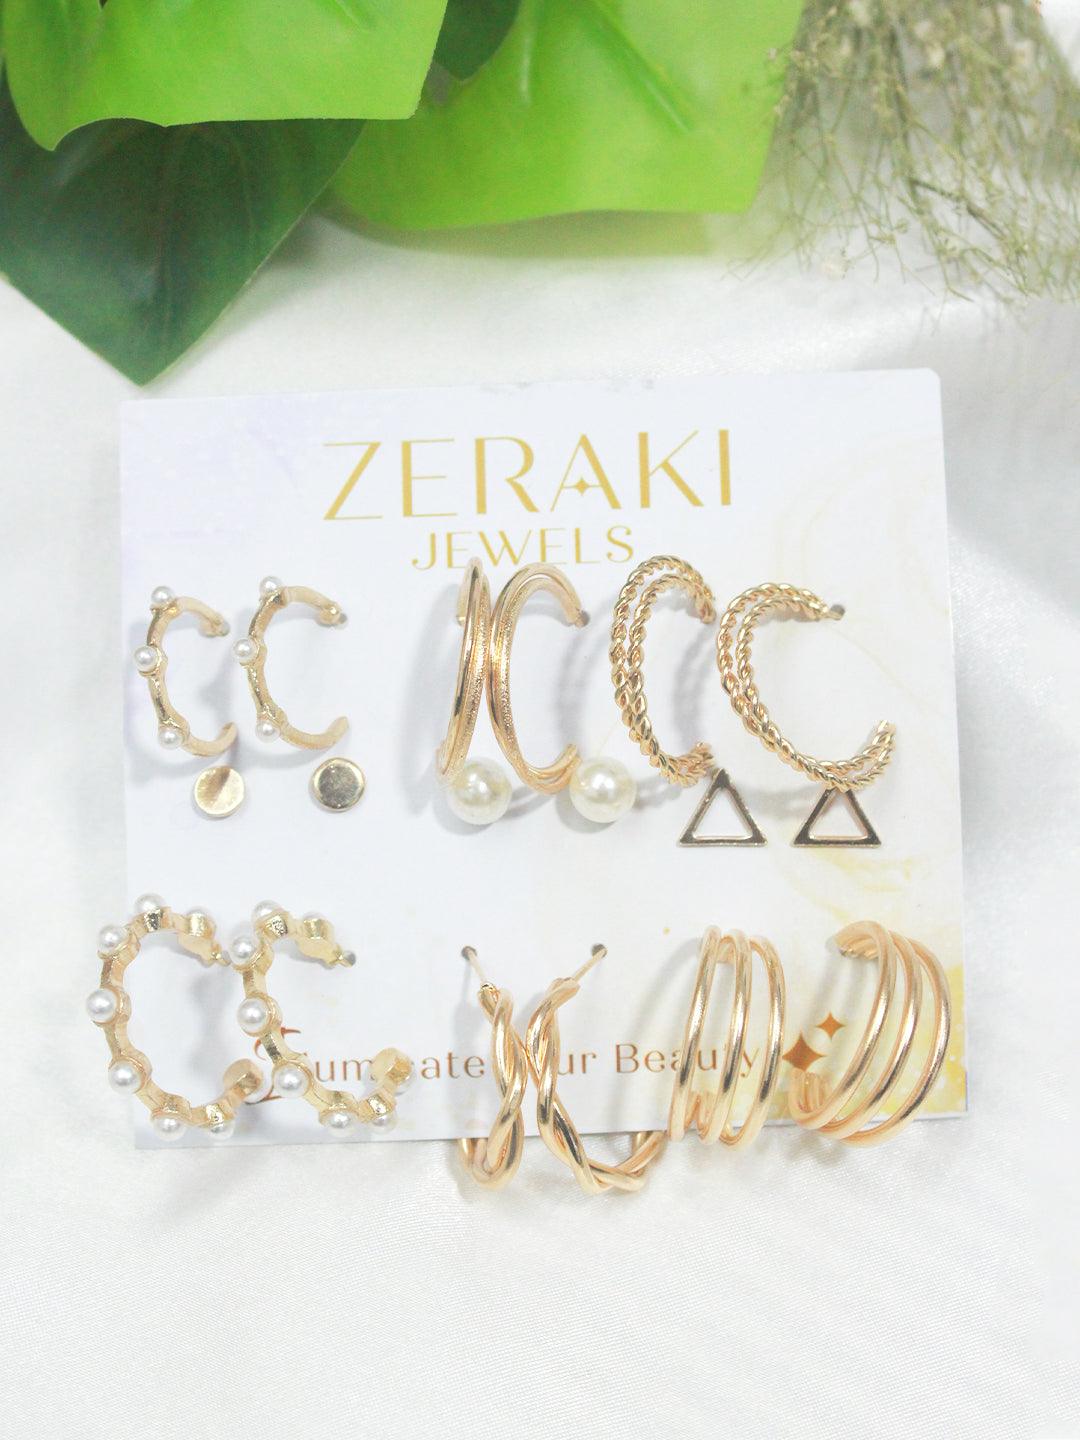 The Sway and Sashay Earring combo - Zeraki Jewels 